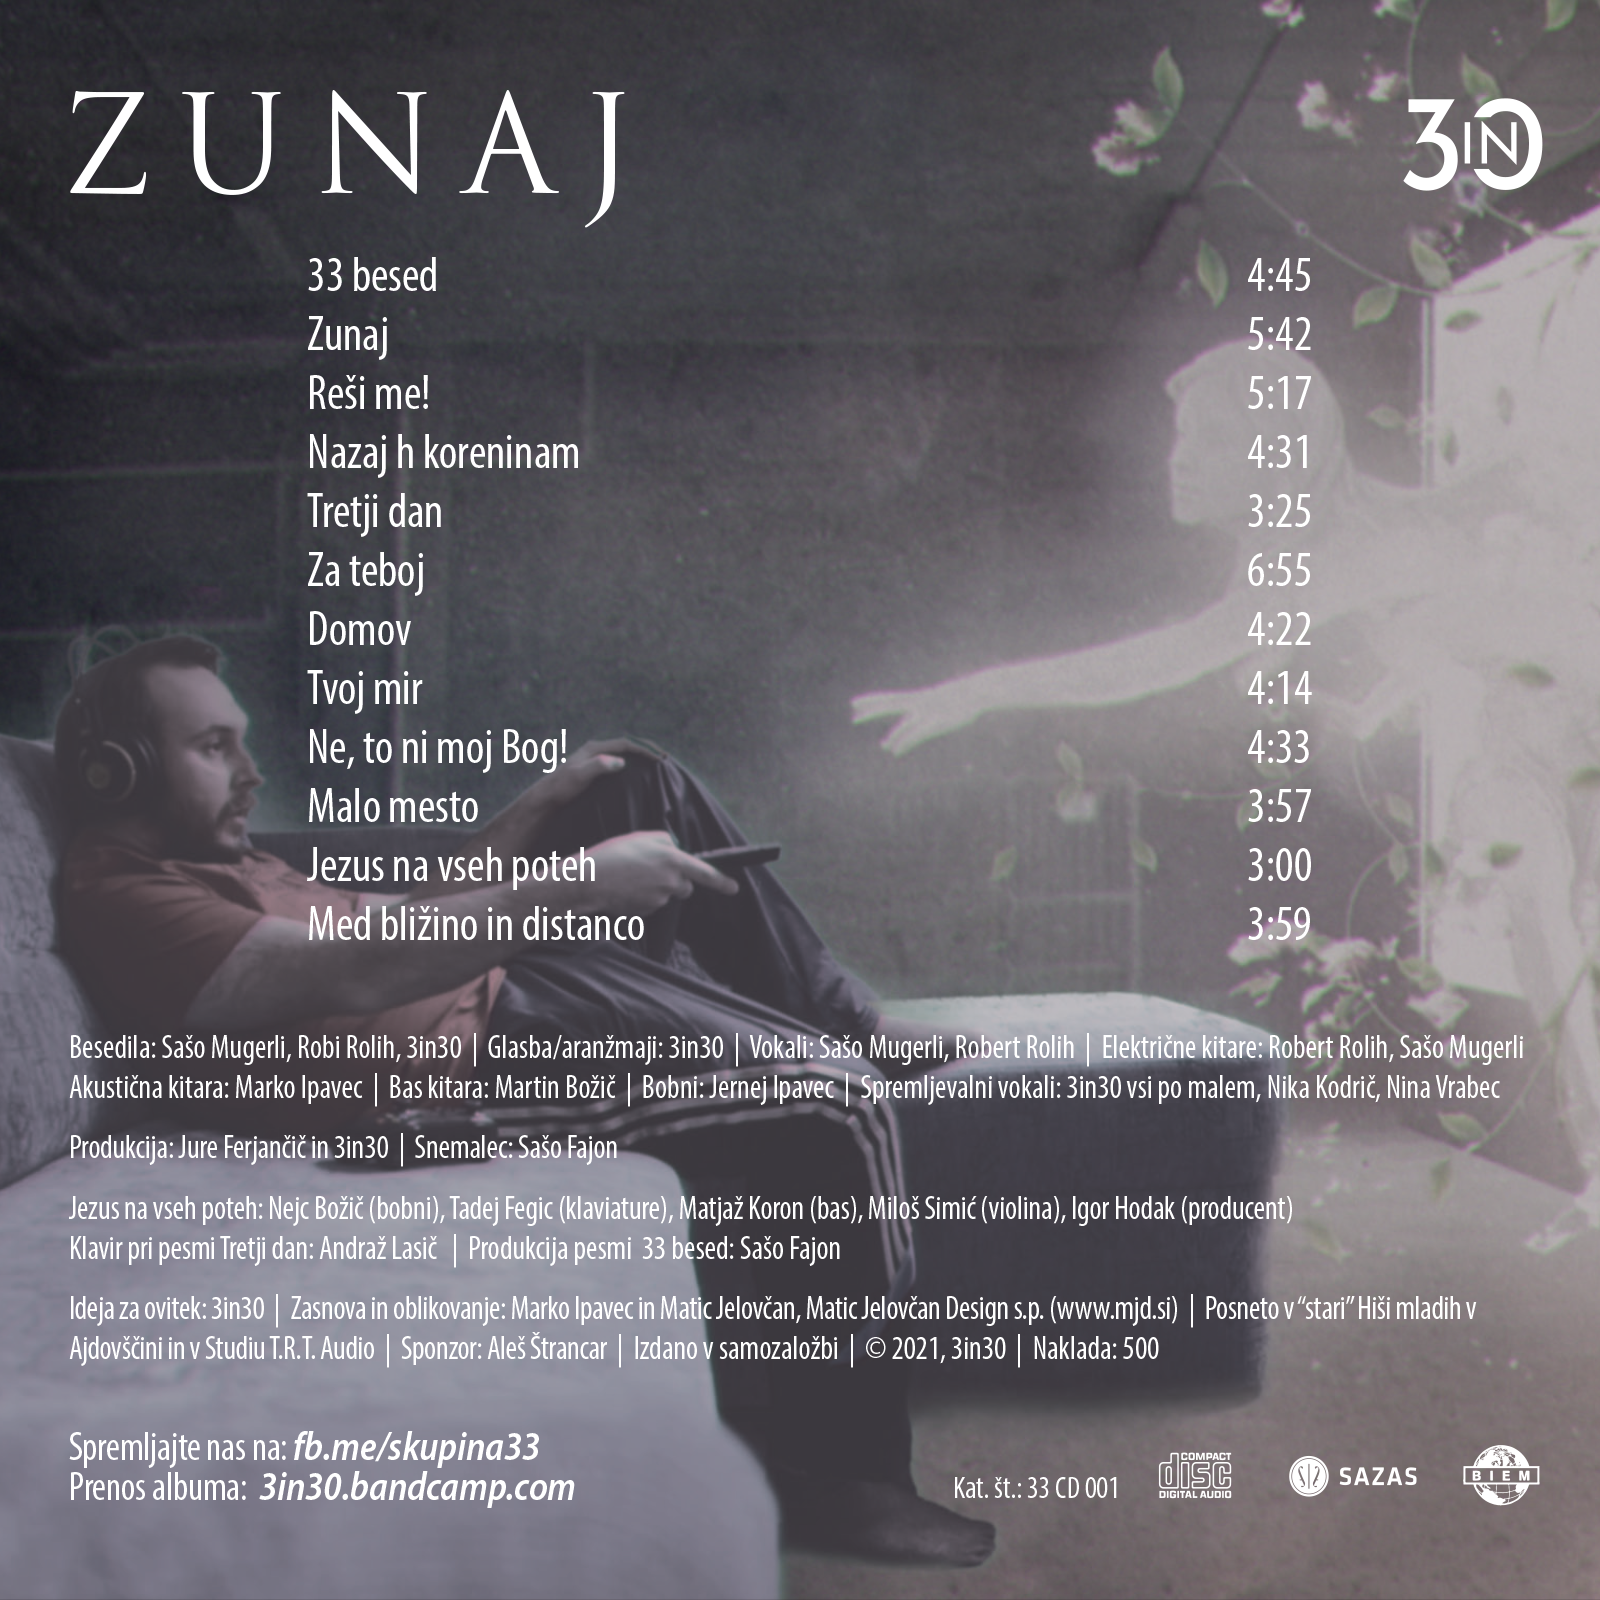 cover cut web back 2 - Cover za "Zunaj" skupine 3in30